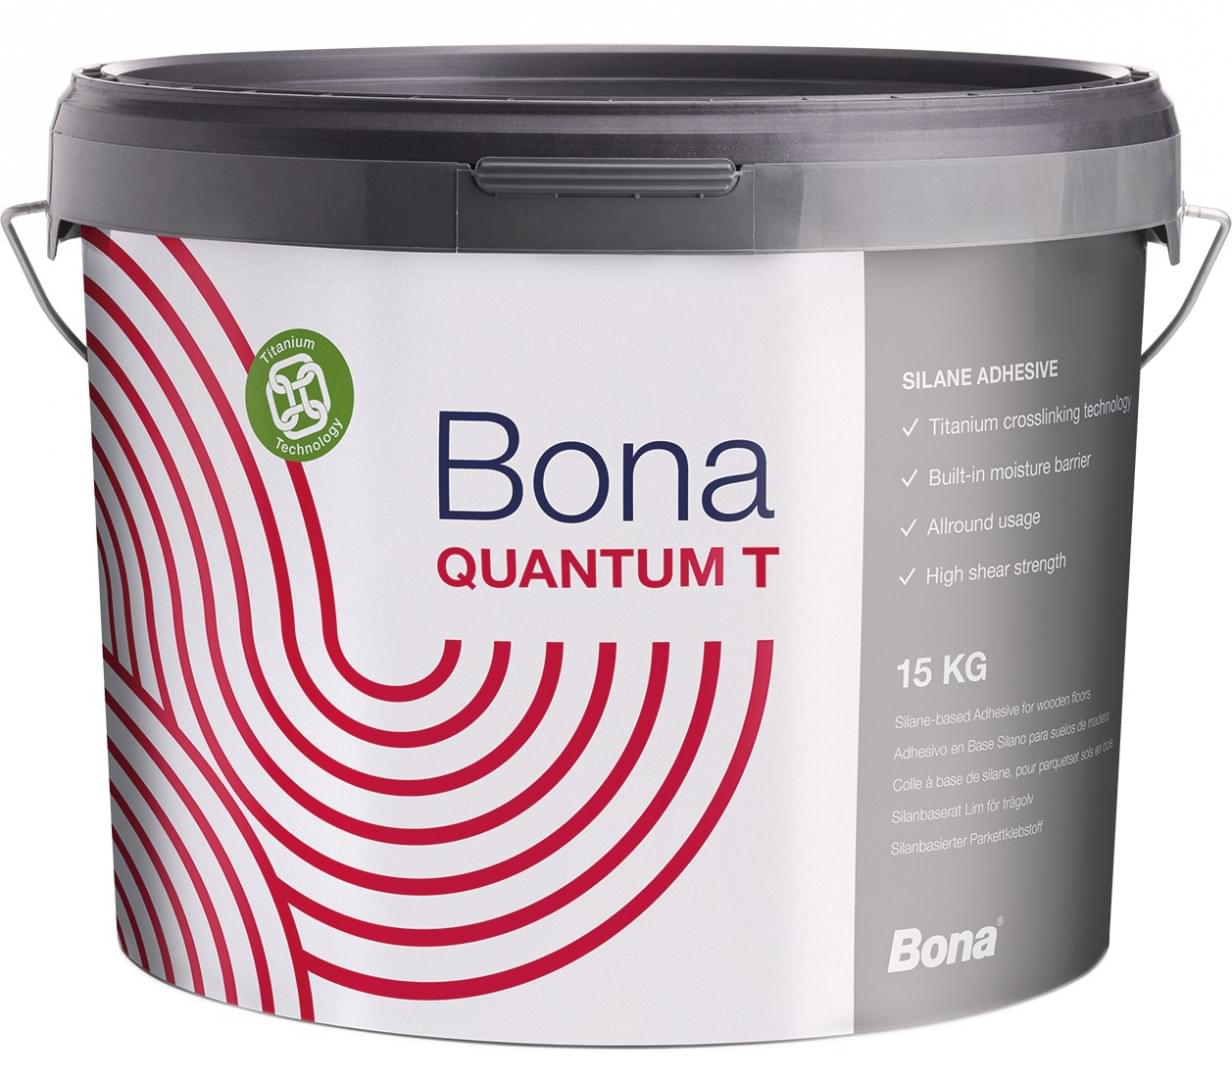 Bona Quantum T from Bona